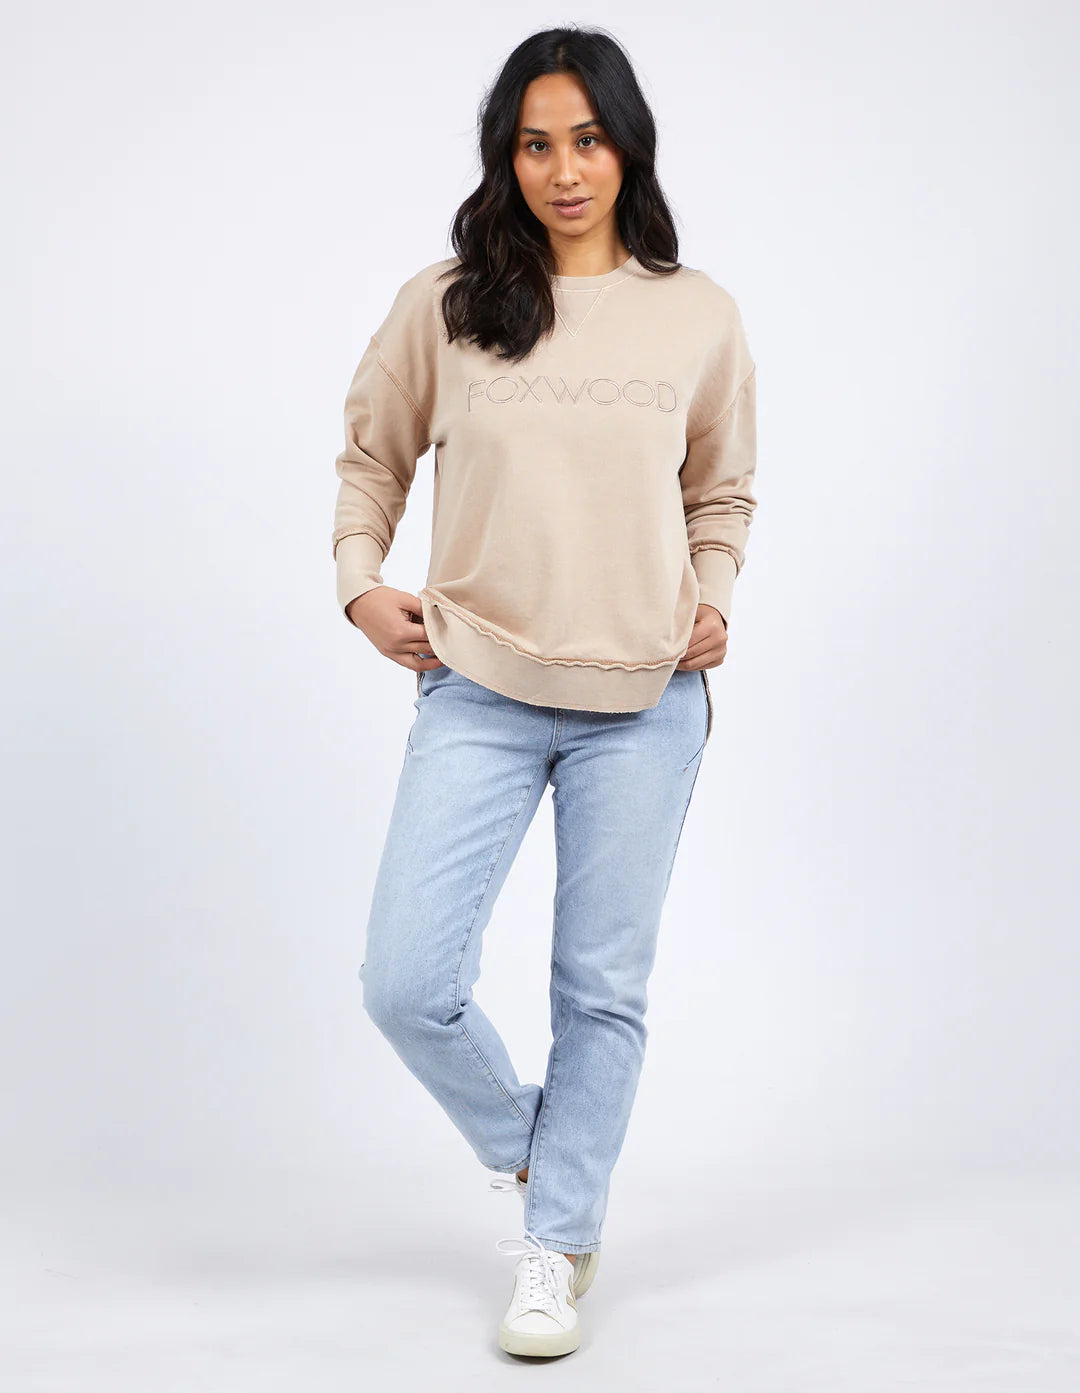 
                  
                    Foxwood Simplified Sweatshirt - Oat
                  
                